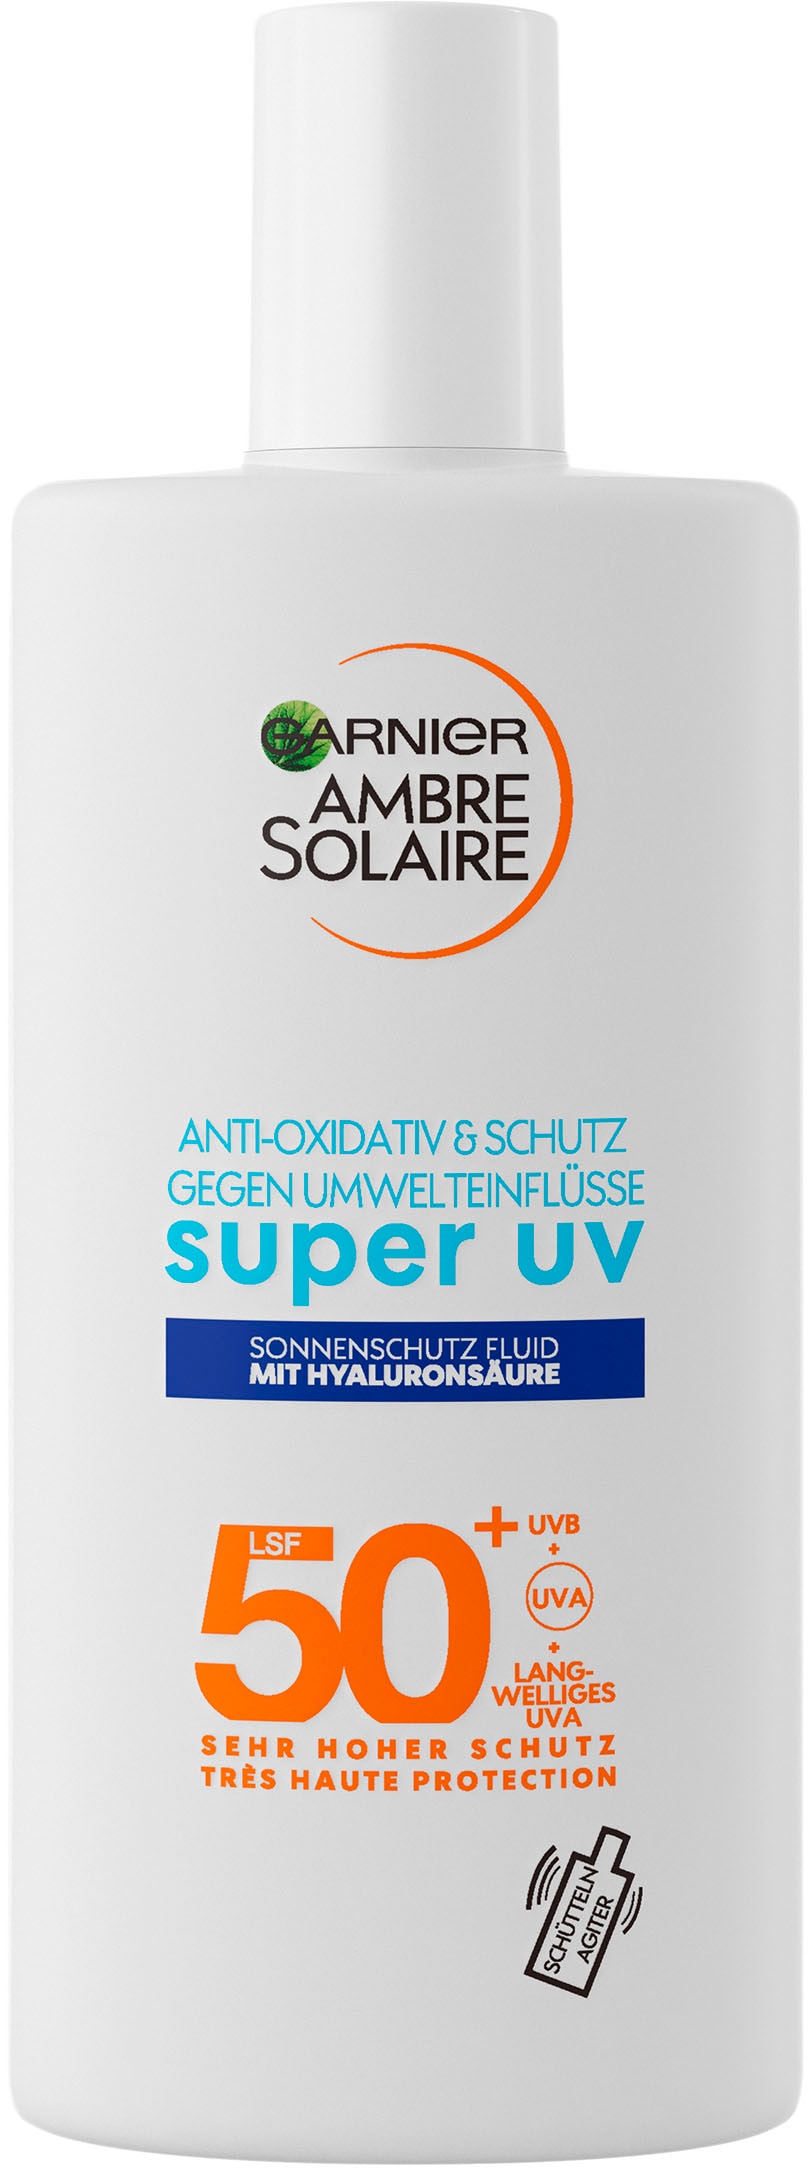 GARNIER Sonnenschutzfluid »Ambre Solaire Sensitive expert+«, 50 LSF bei mit Hyaluronsäure